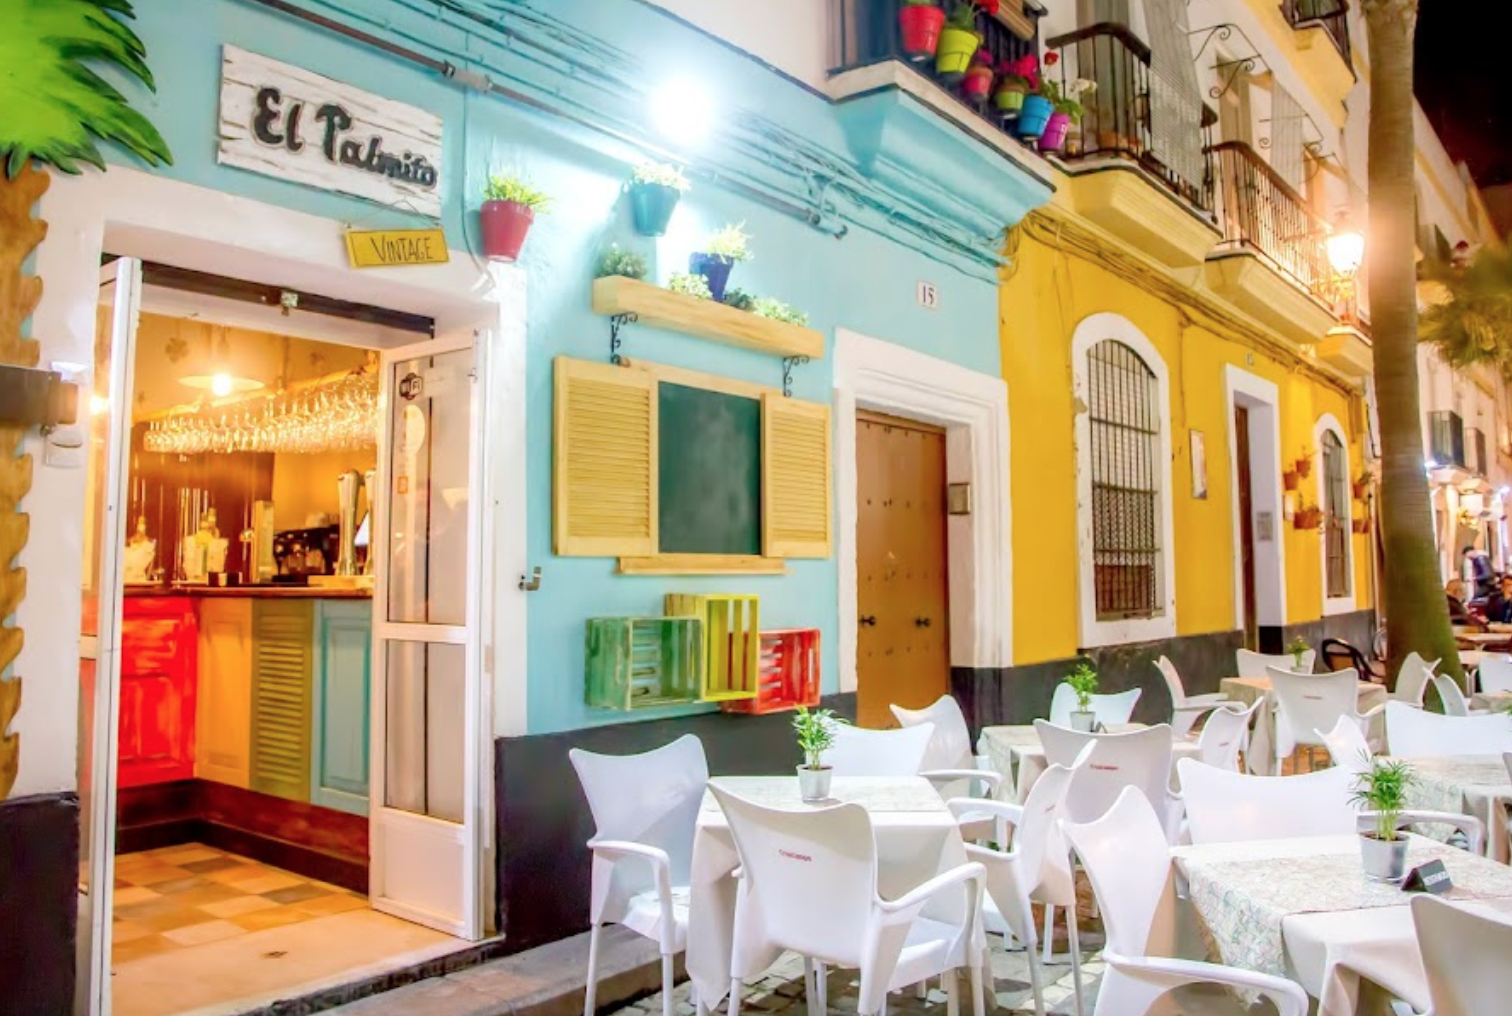 El Palmito Vintage, bar precintado en la calle La Palma en Cádiz. 